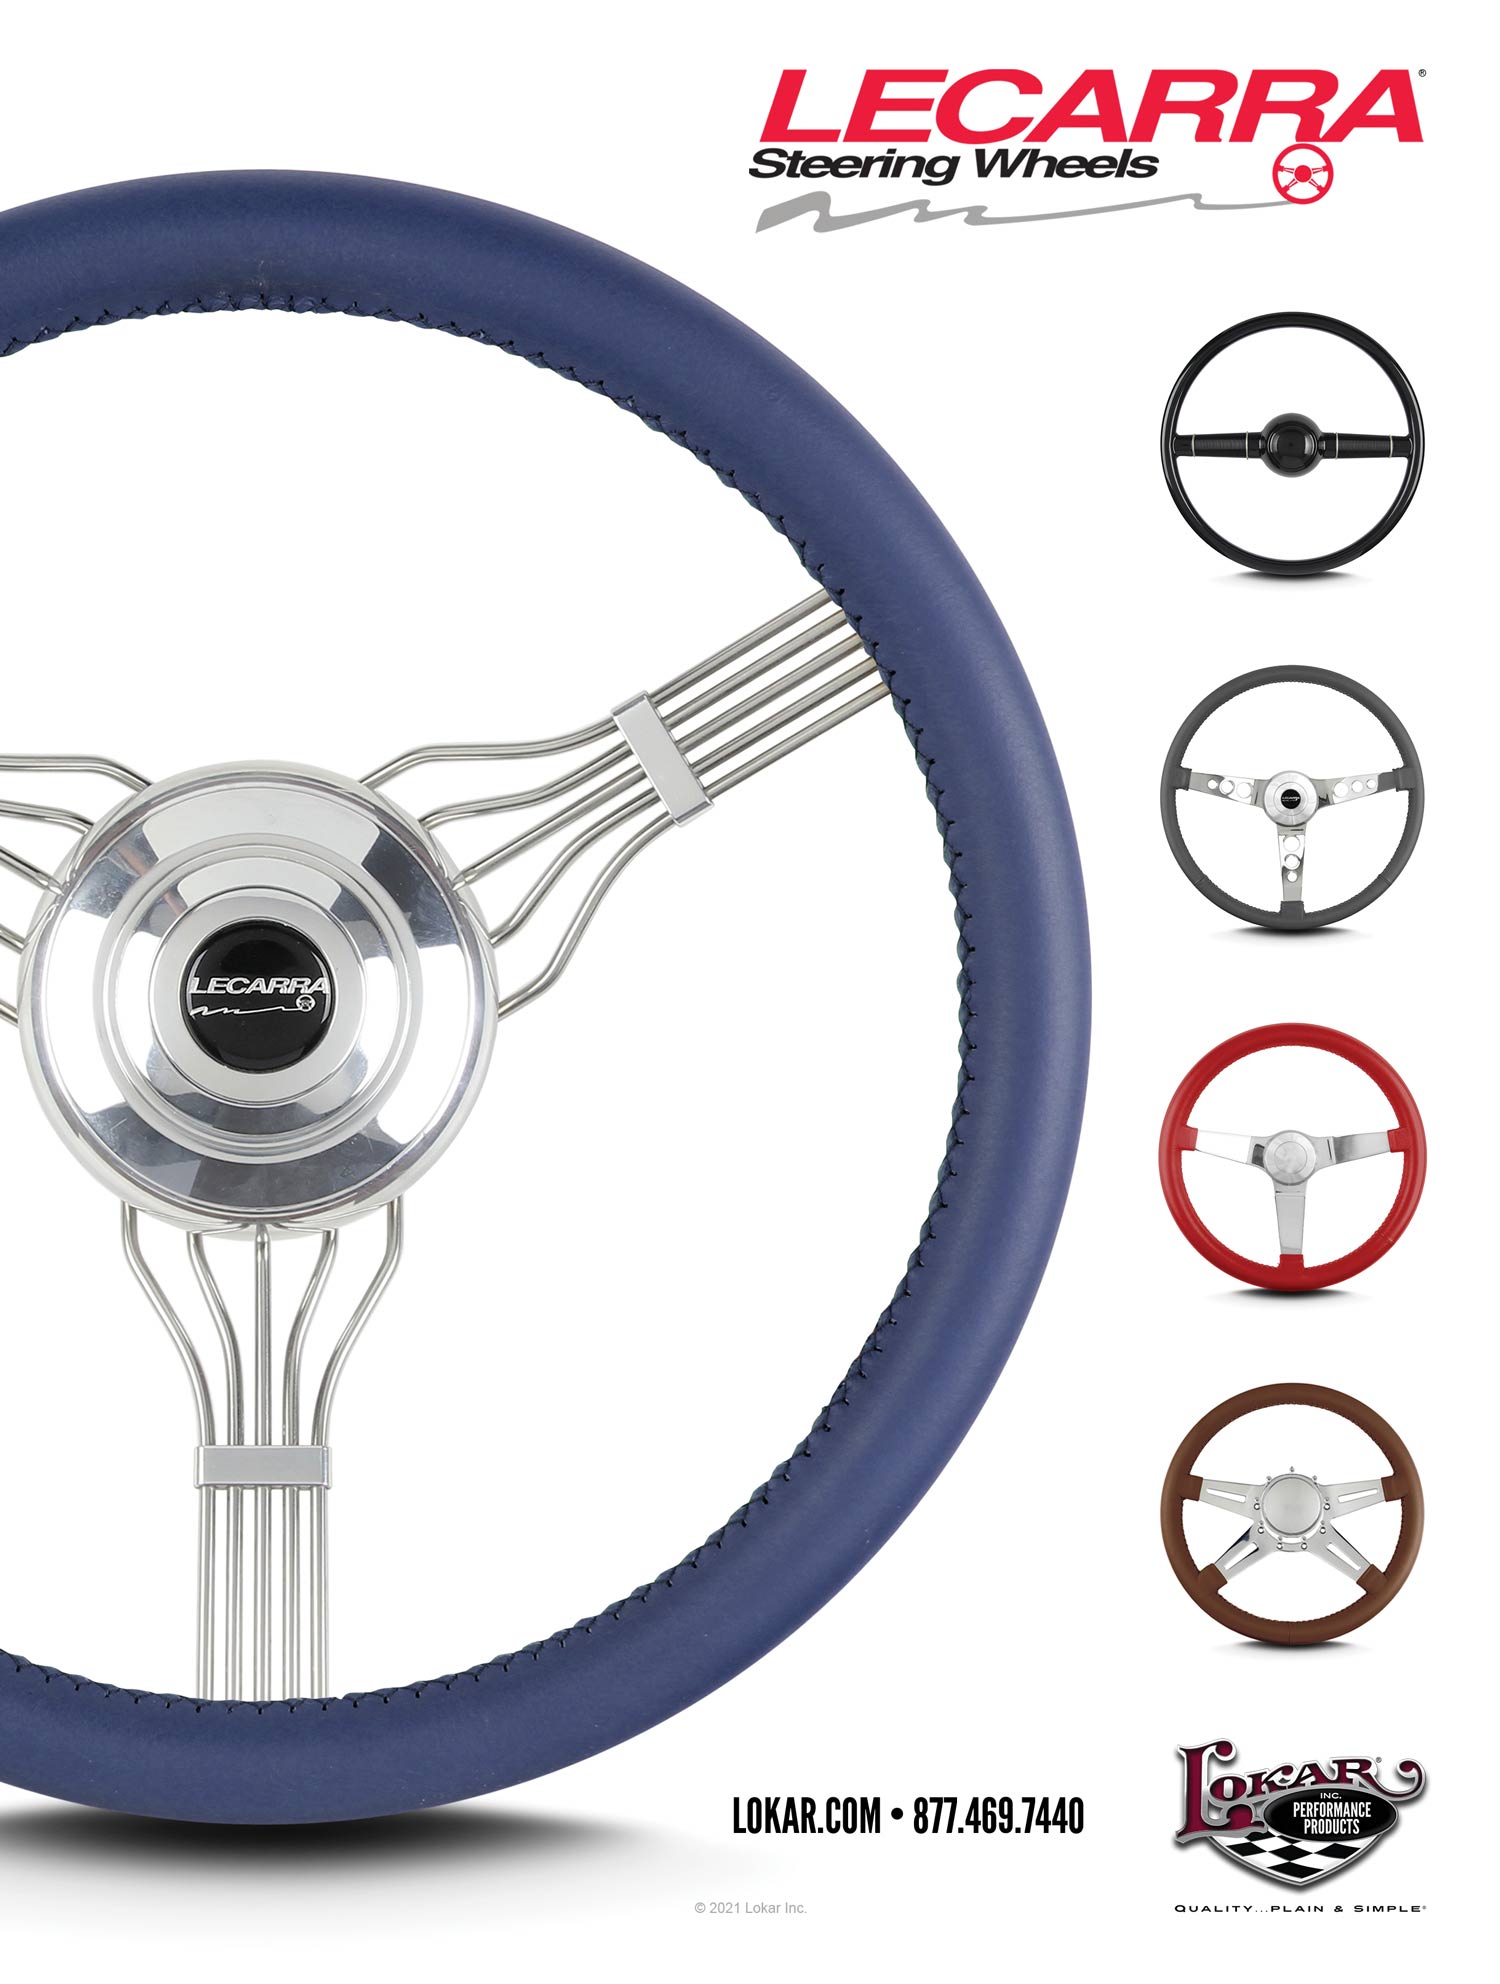 LECARRA Steering Wheels by Lokar Advertisement